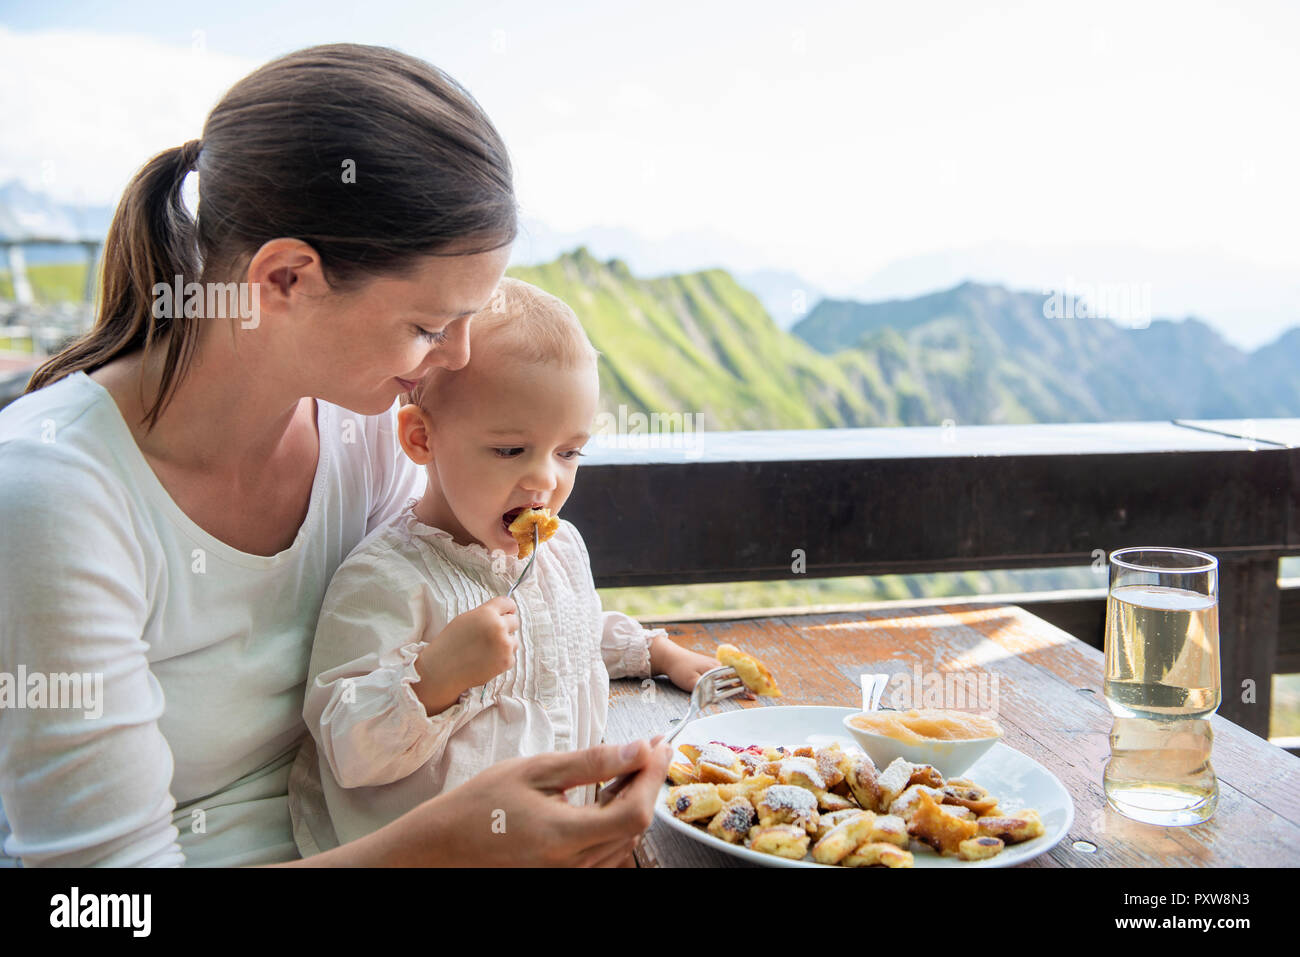 Alemania, Baviera, Oberstdorf, madre e hija almorzando en una cabaña de montaña Foto de stock